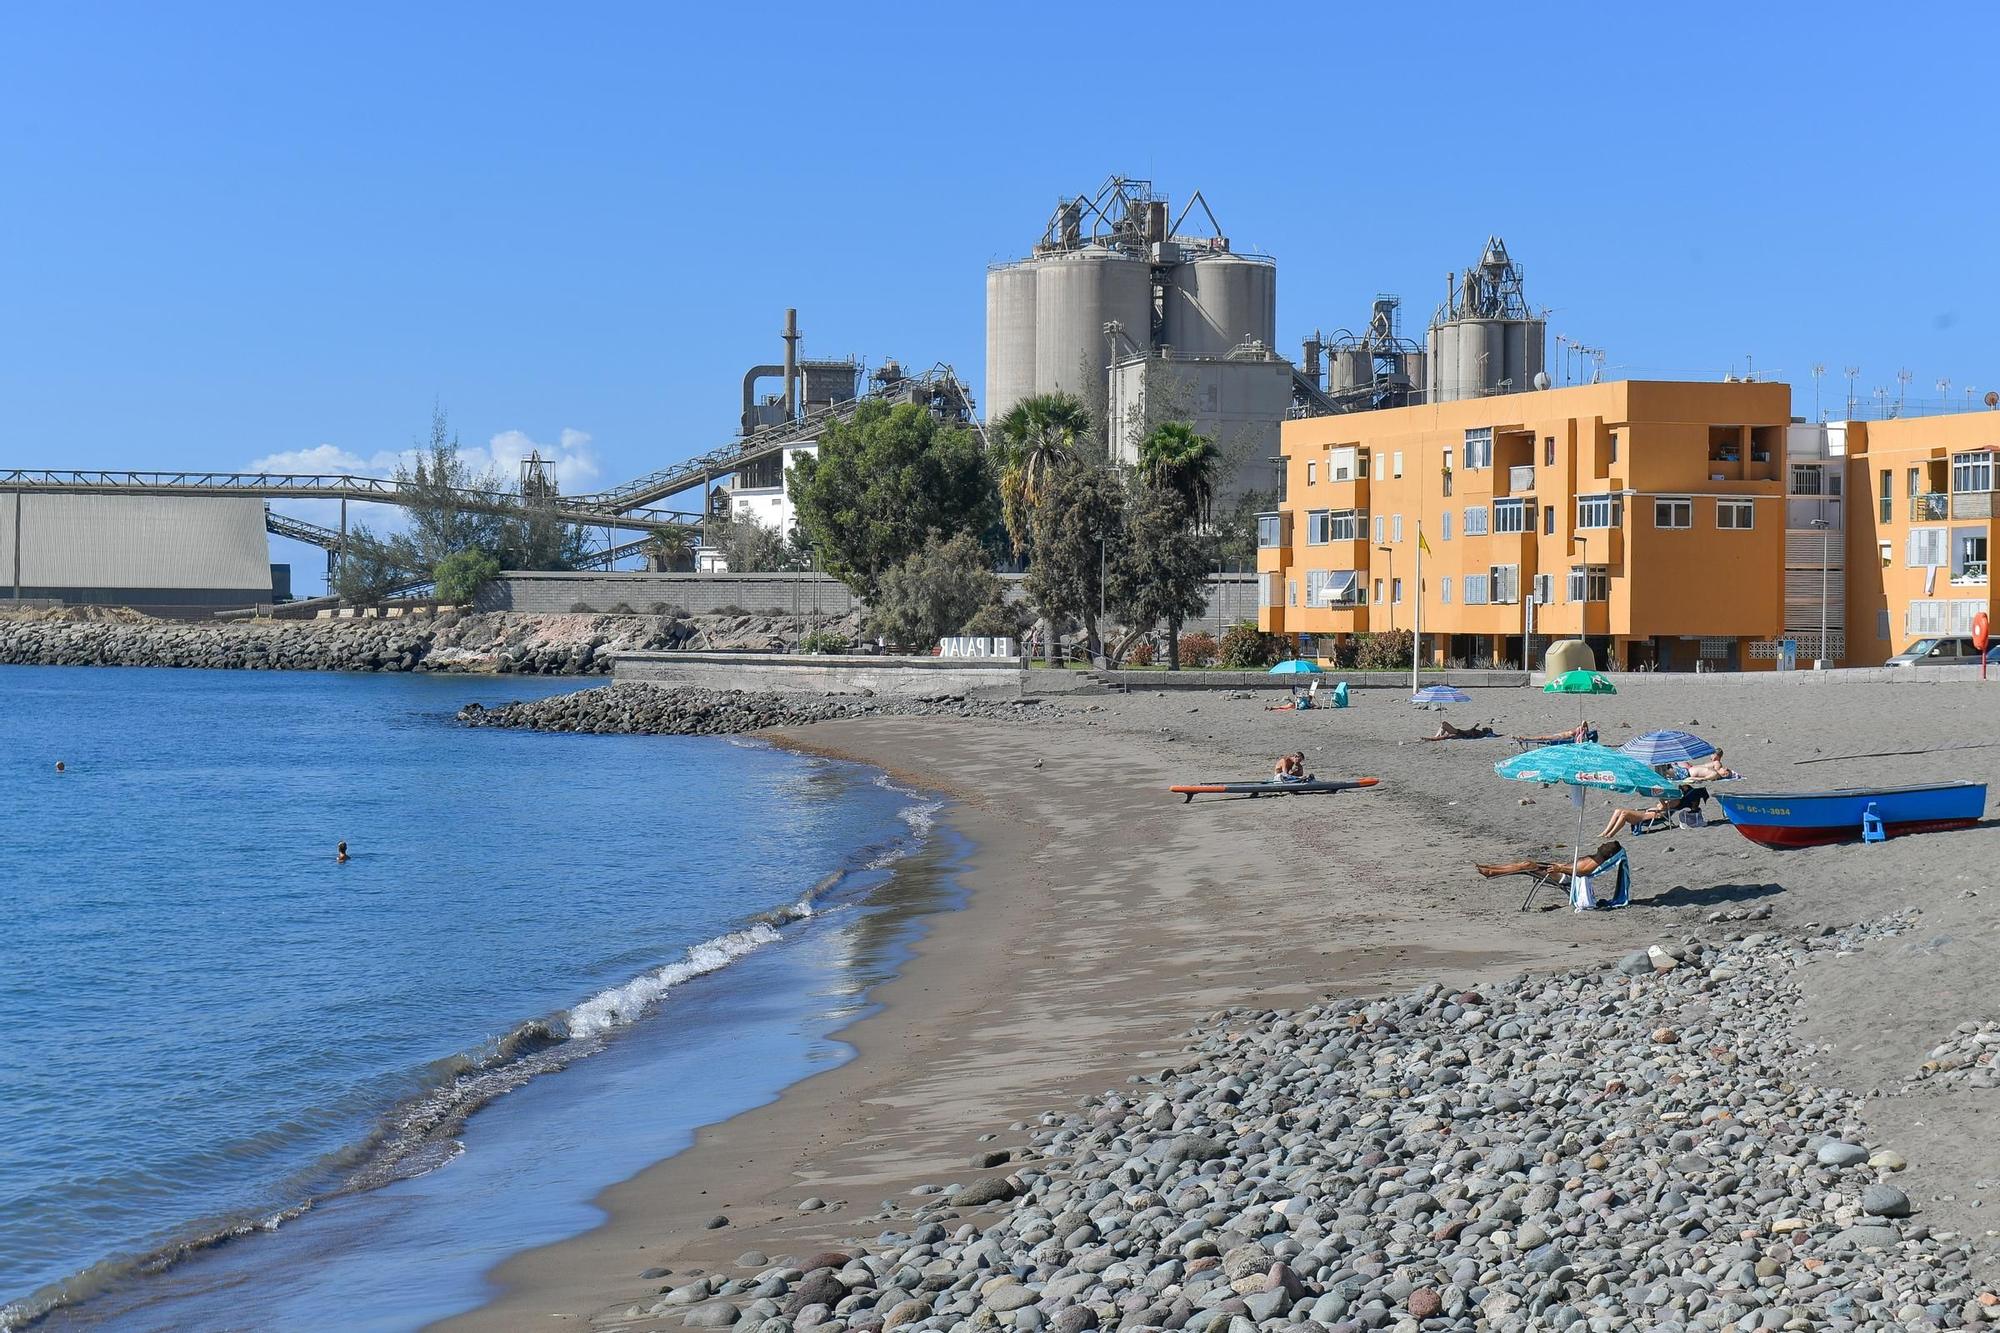 Imagen de la bahía de El Pajar en la que se observa parte de la zona residencial, la fábrica cementera y el puerto.